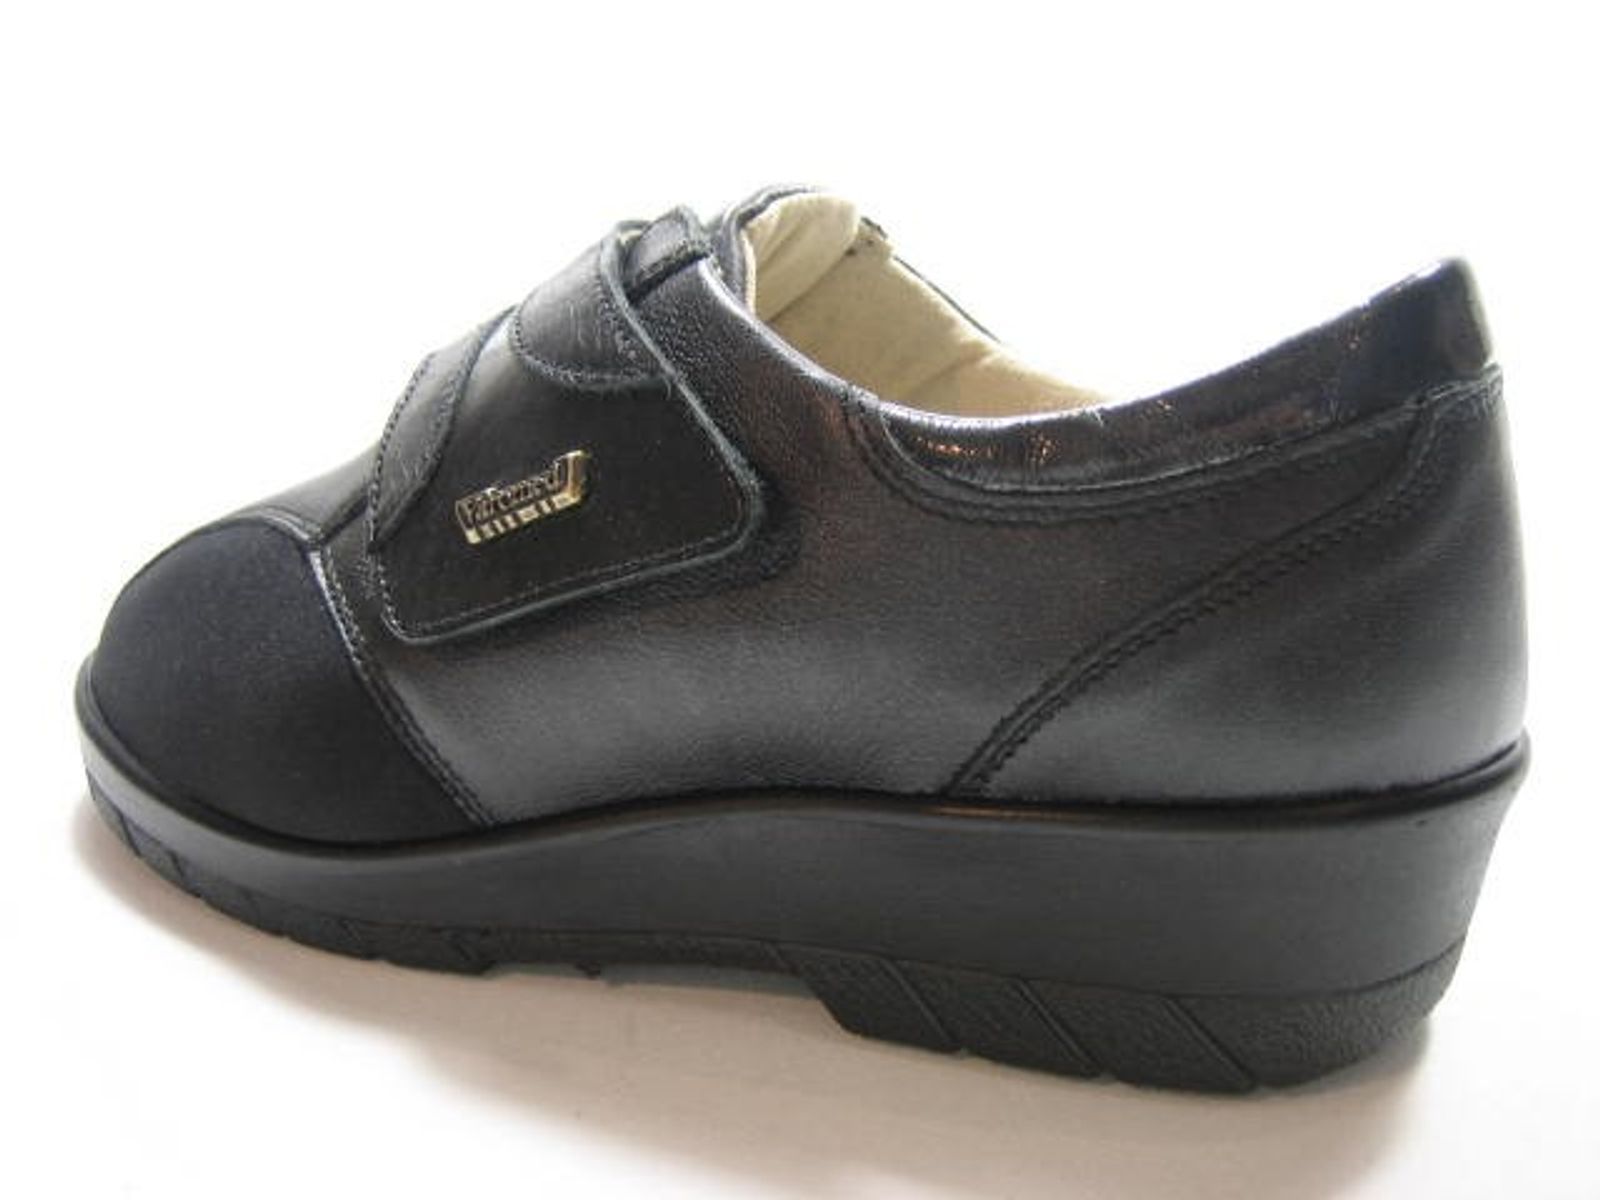 Schuh von Varomed, 38